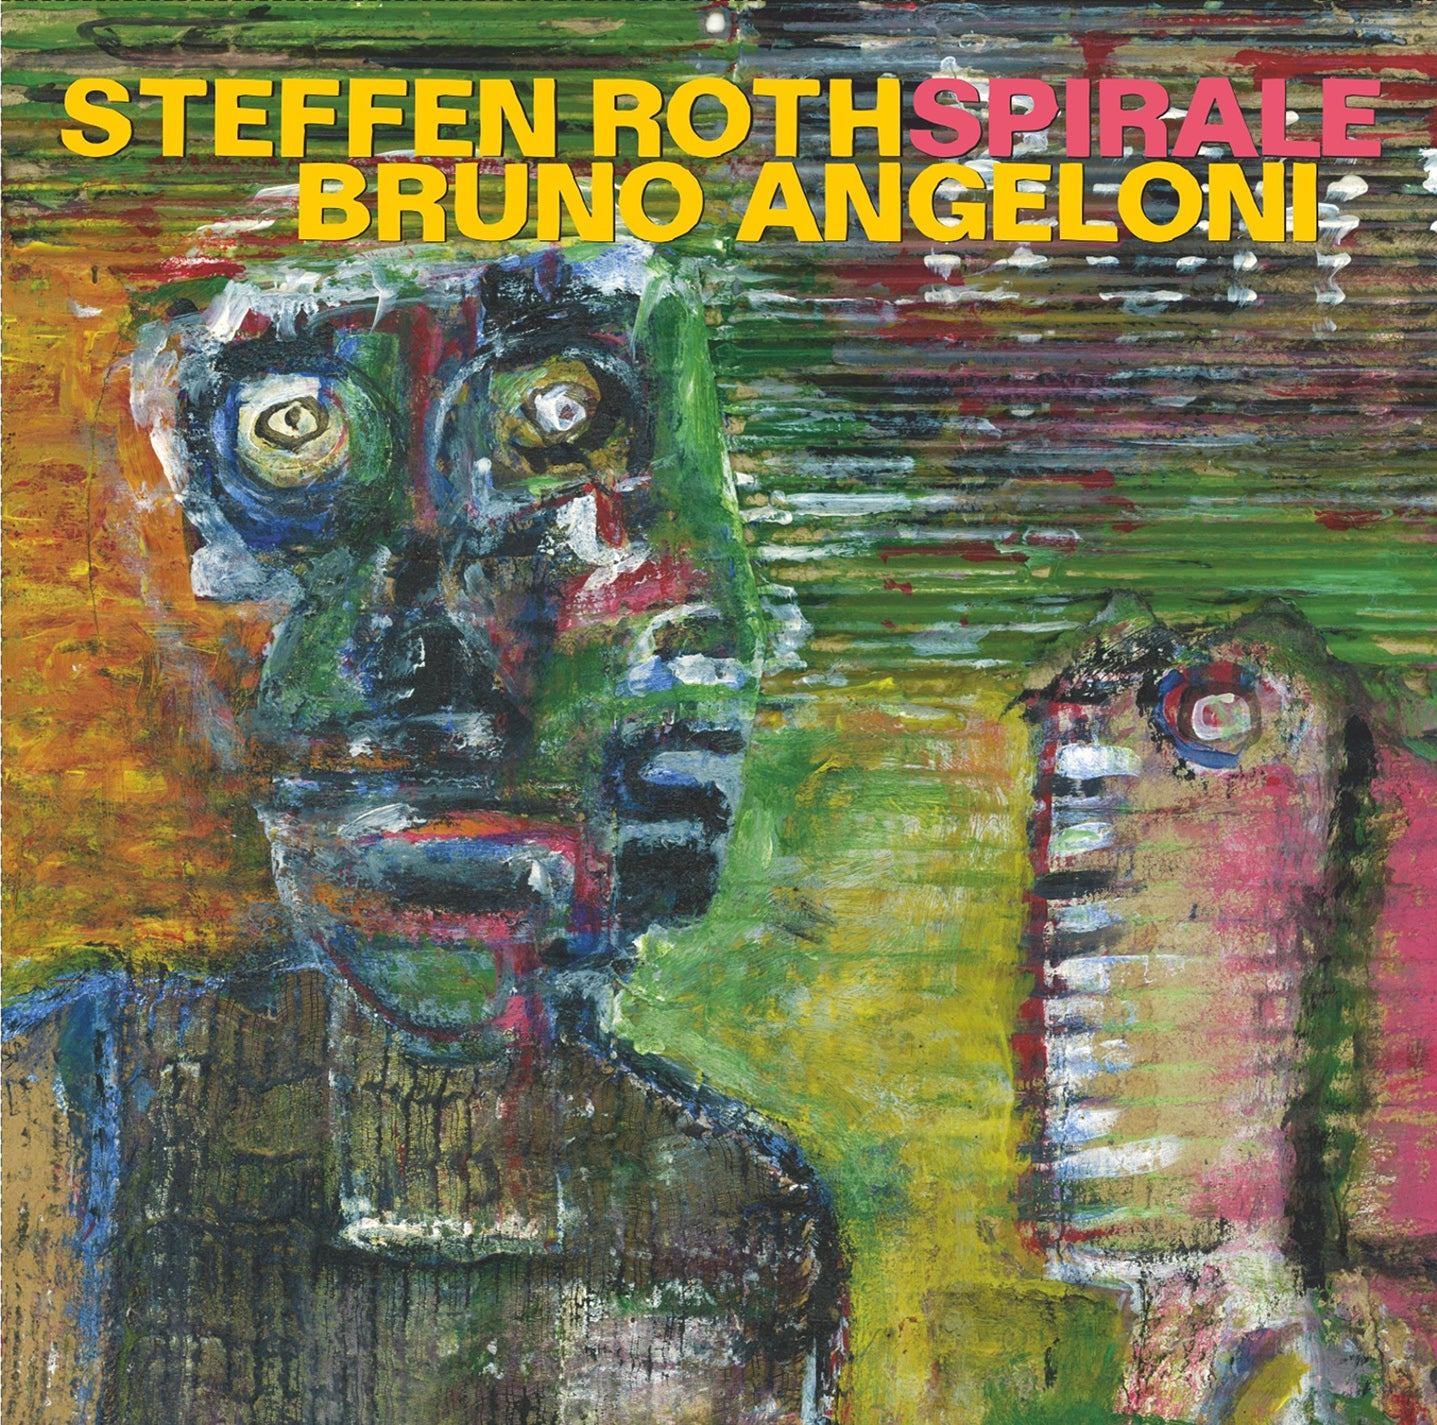 Spirale / Bruno Angeloni, Steffen Roth